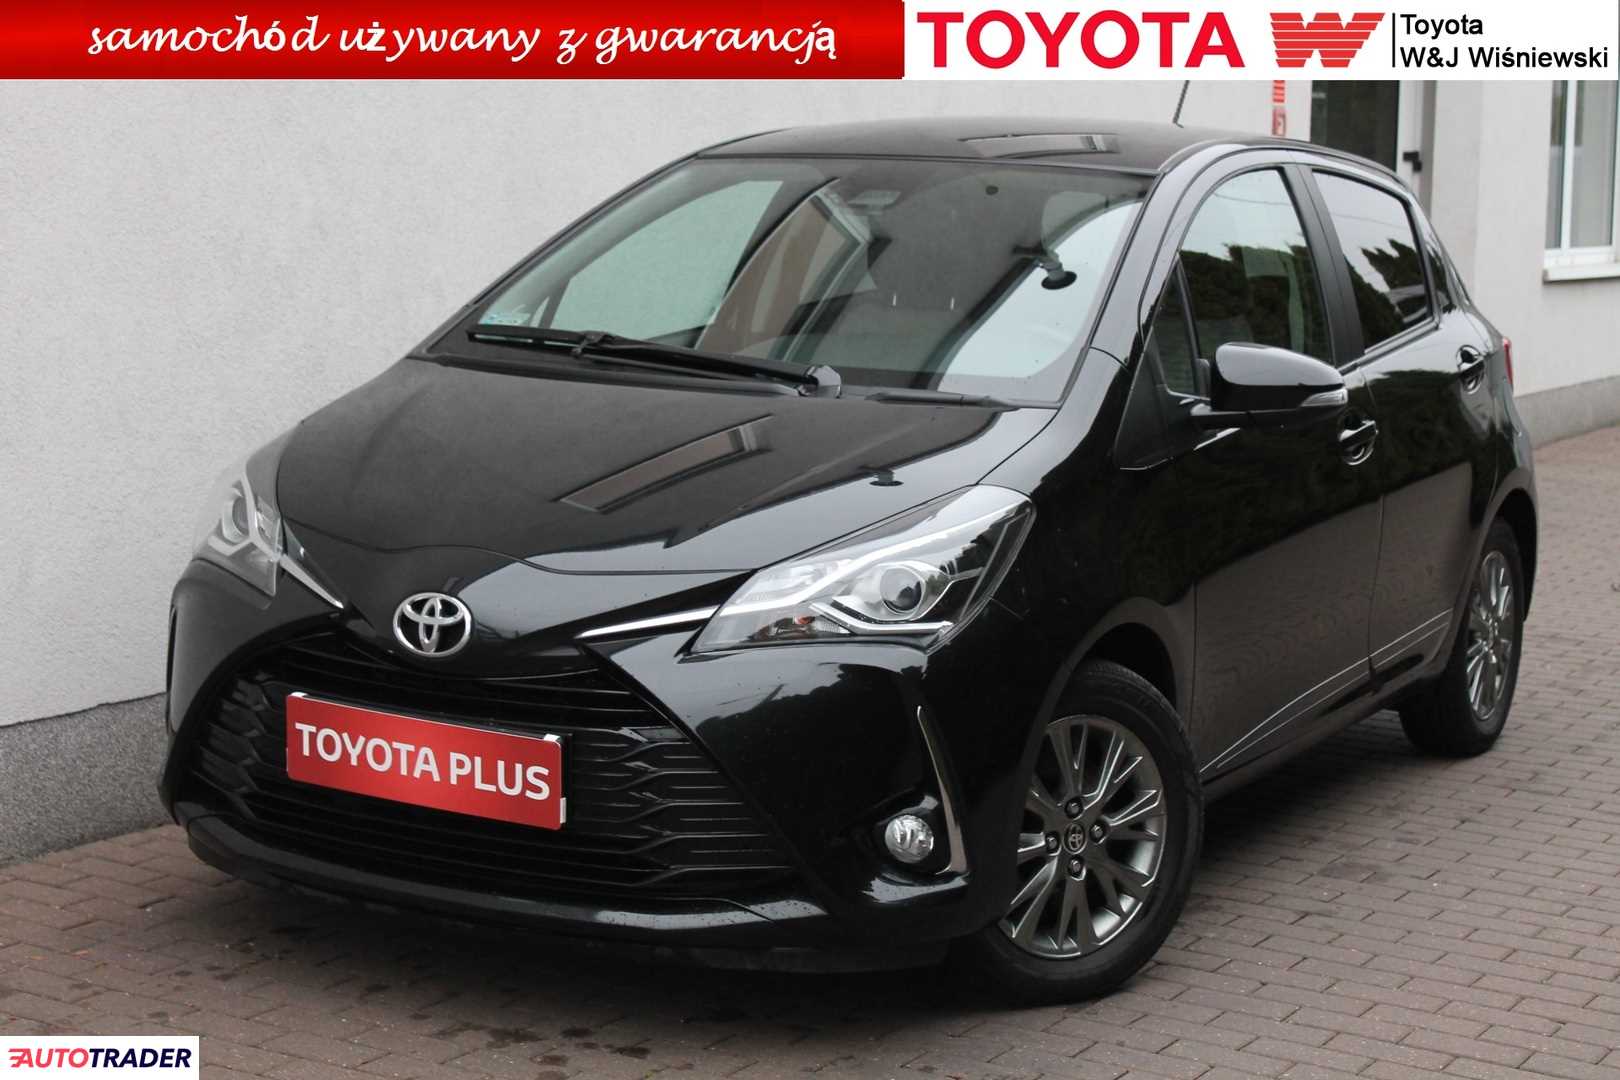 Toyota Yaris 1.5 benzyna 111 KM 2017r. (Izabelin, k